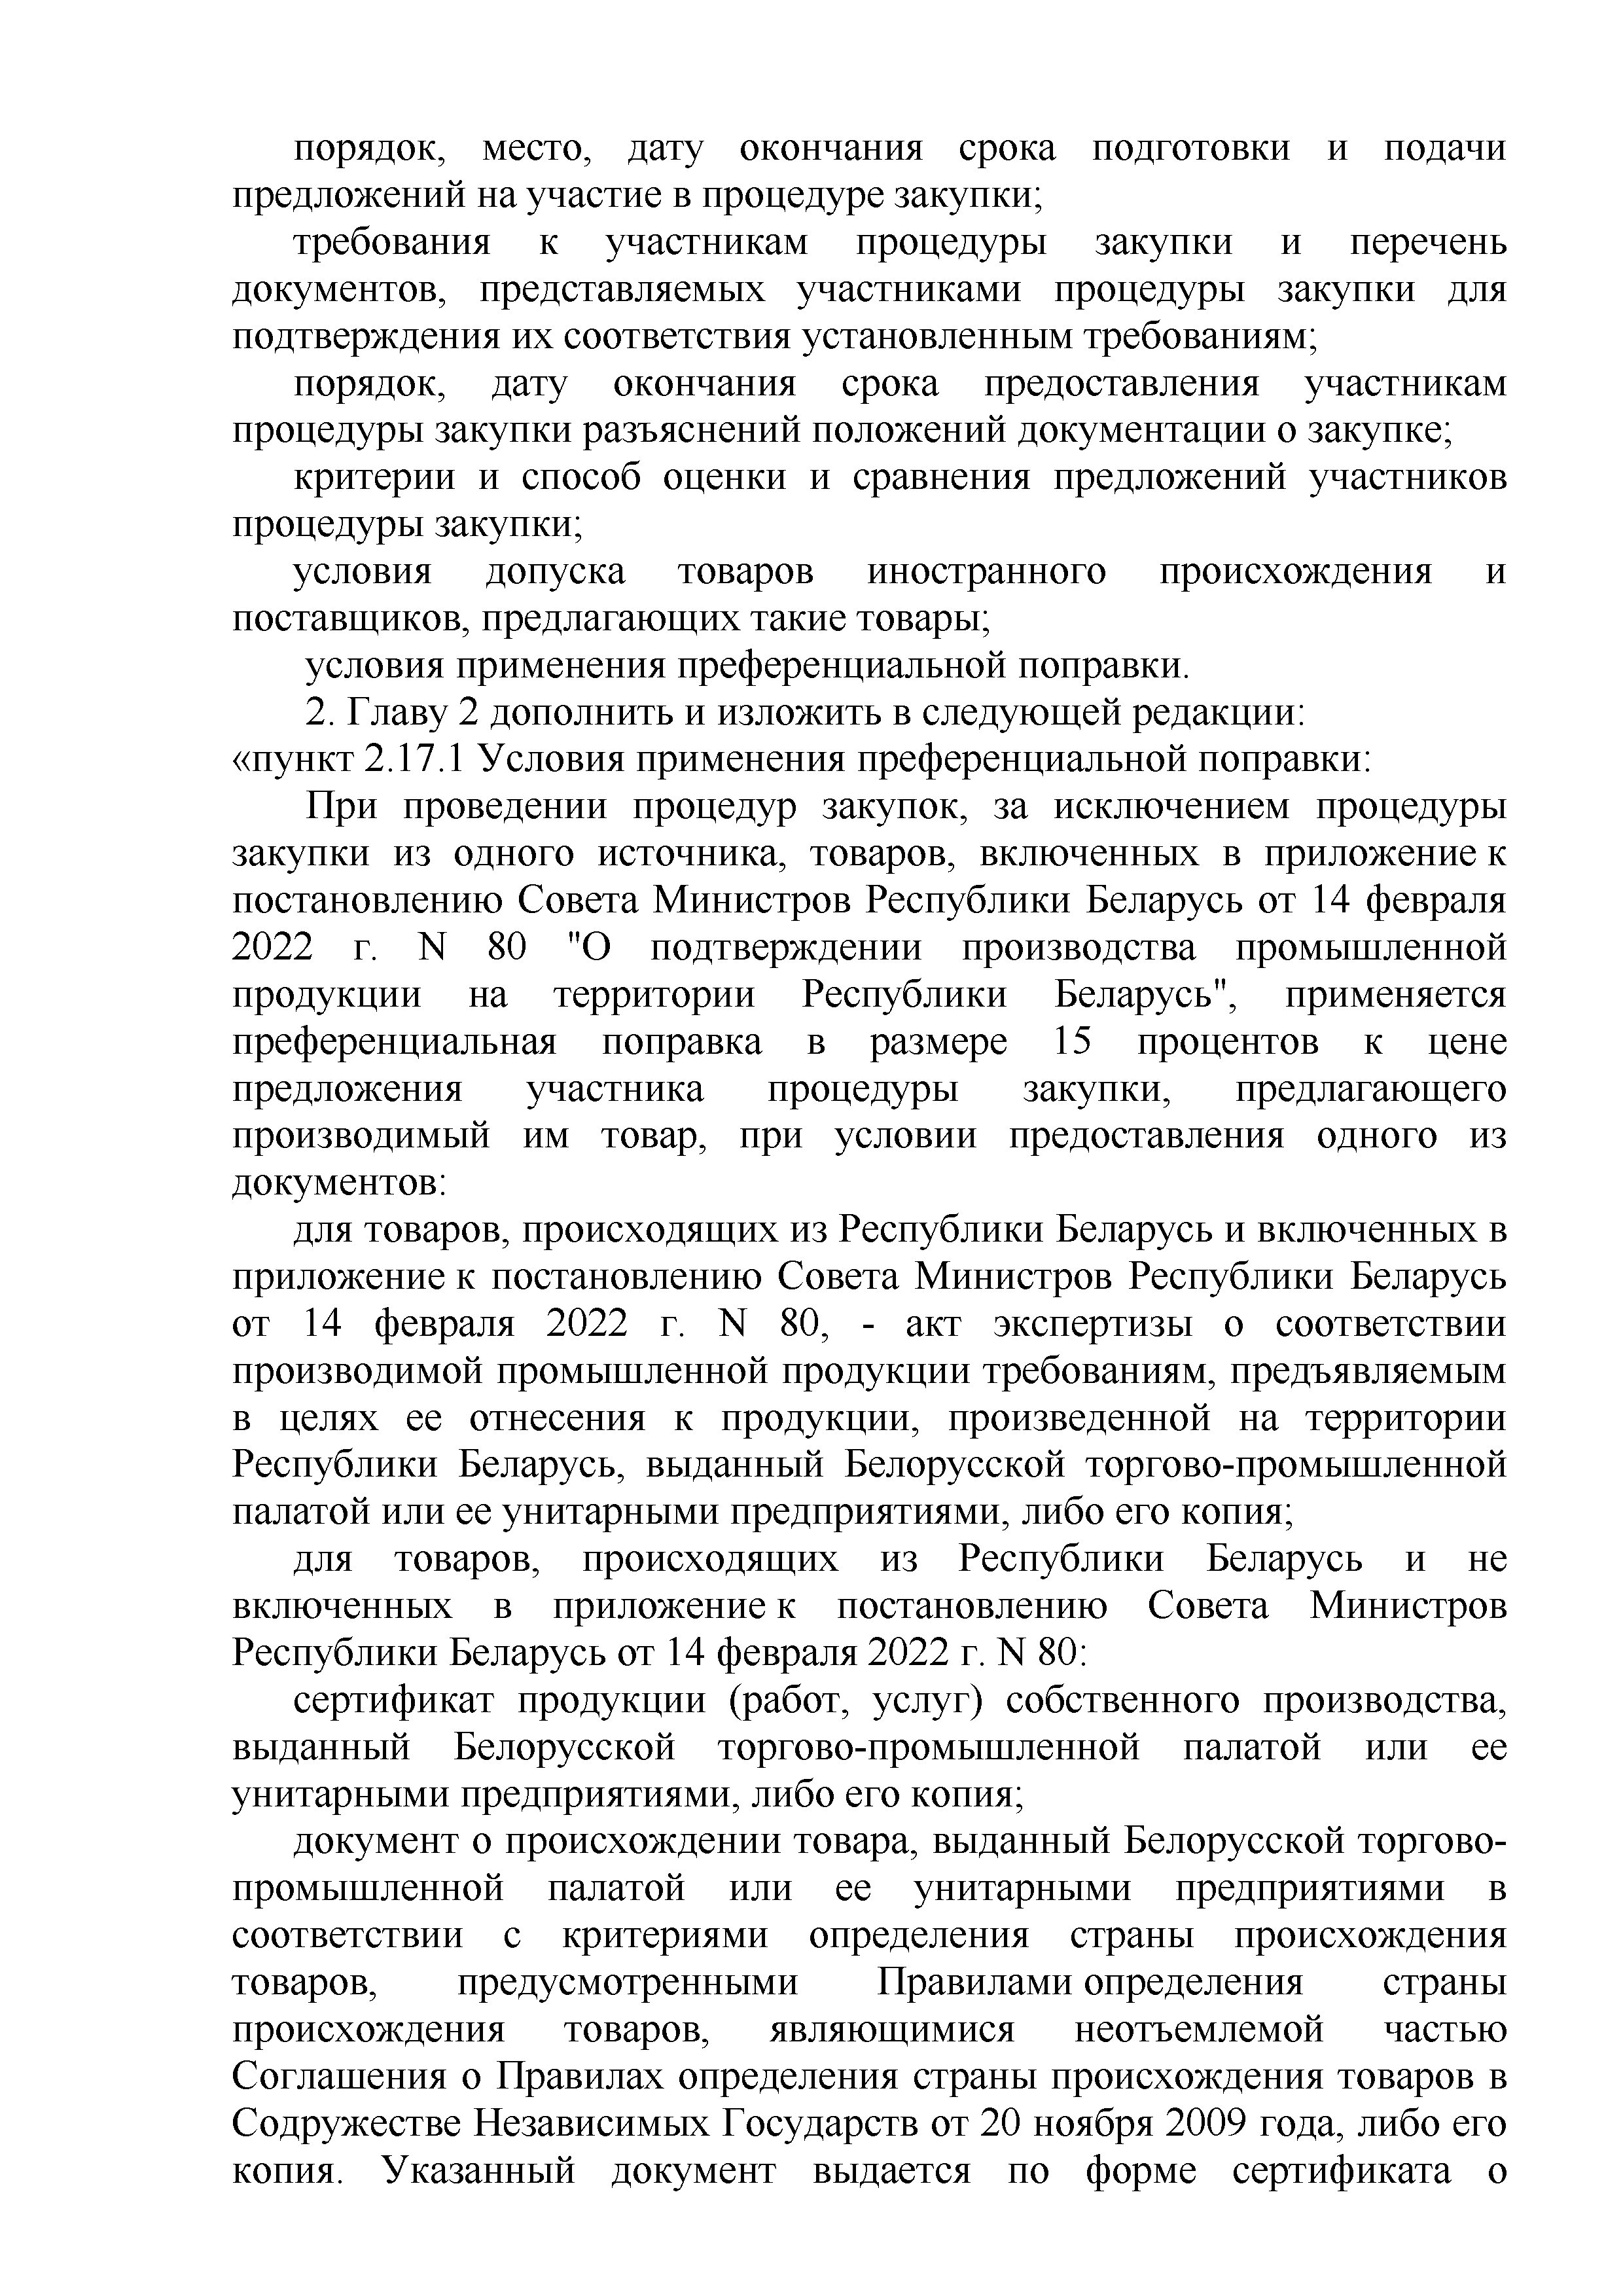 ОАО Торговый дом Сож - Изменения и дополнения 10.01.2023